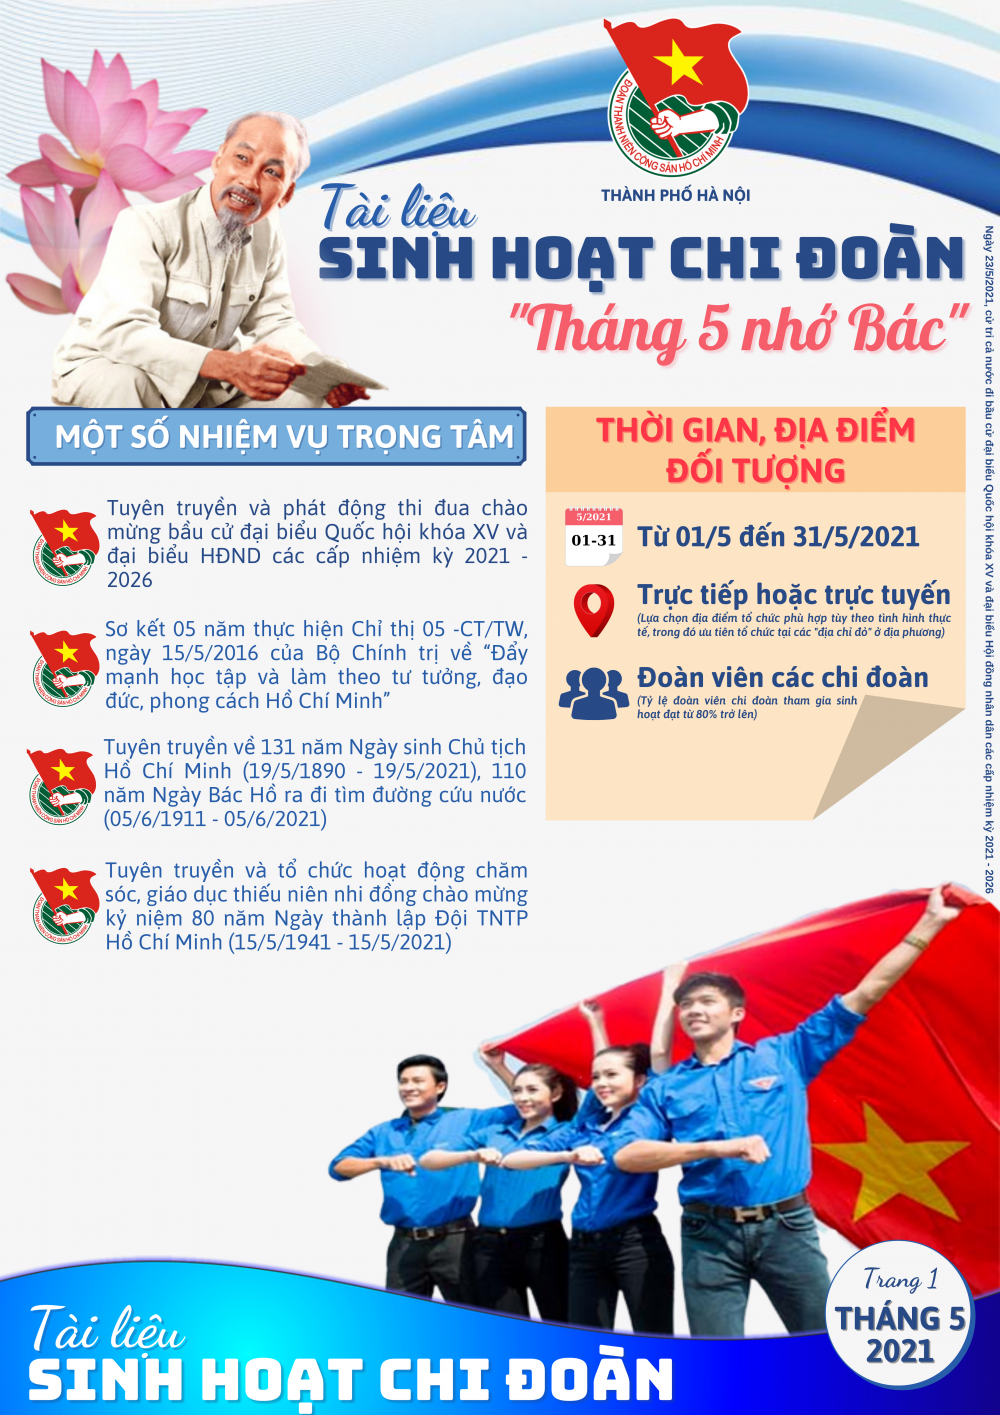 Thành đoàn Hà Nội phát hành tài liệu sinh hoạt chi đoàn chủ đề 